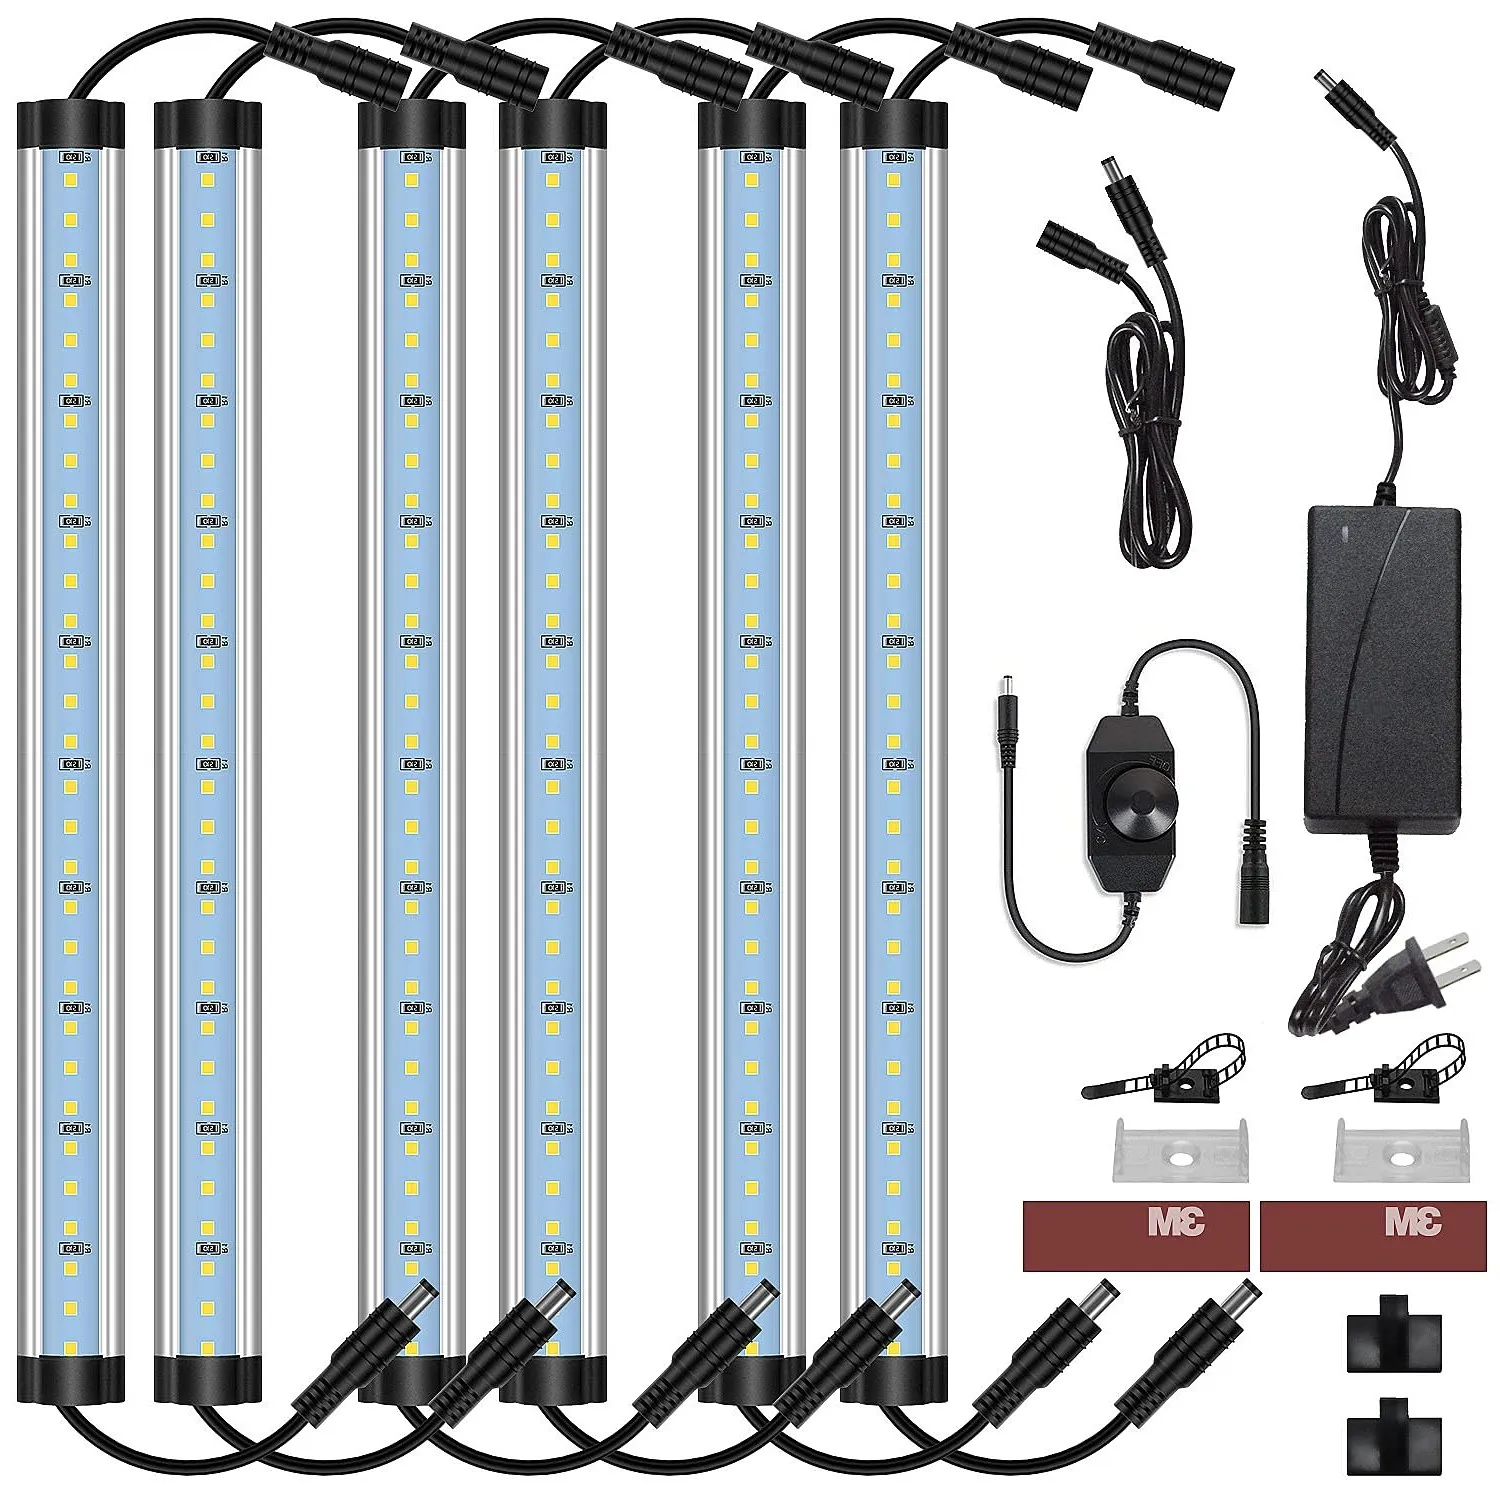 Cnsunway LED -Schrankleuchten Kit Plug in gekordete 12 -V -LED unter Schränken Beleuchtung mit Schalter für Küchenregalschalter 12 Zoll 5000 kamen Tageslicht weiß